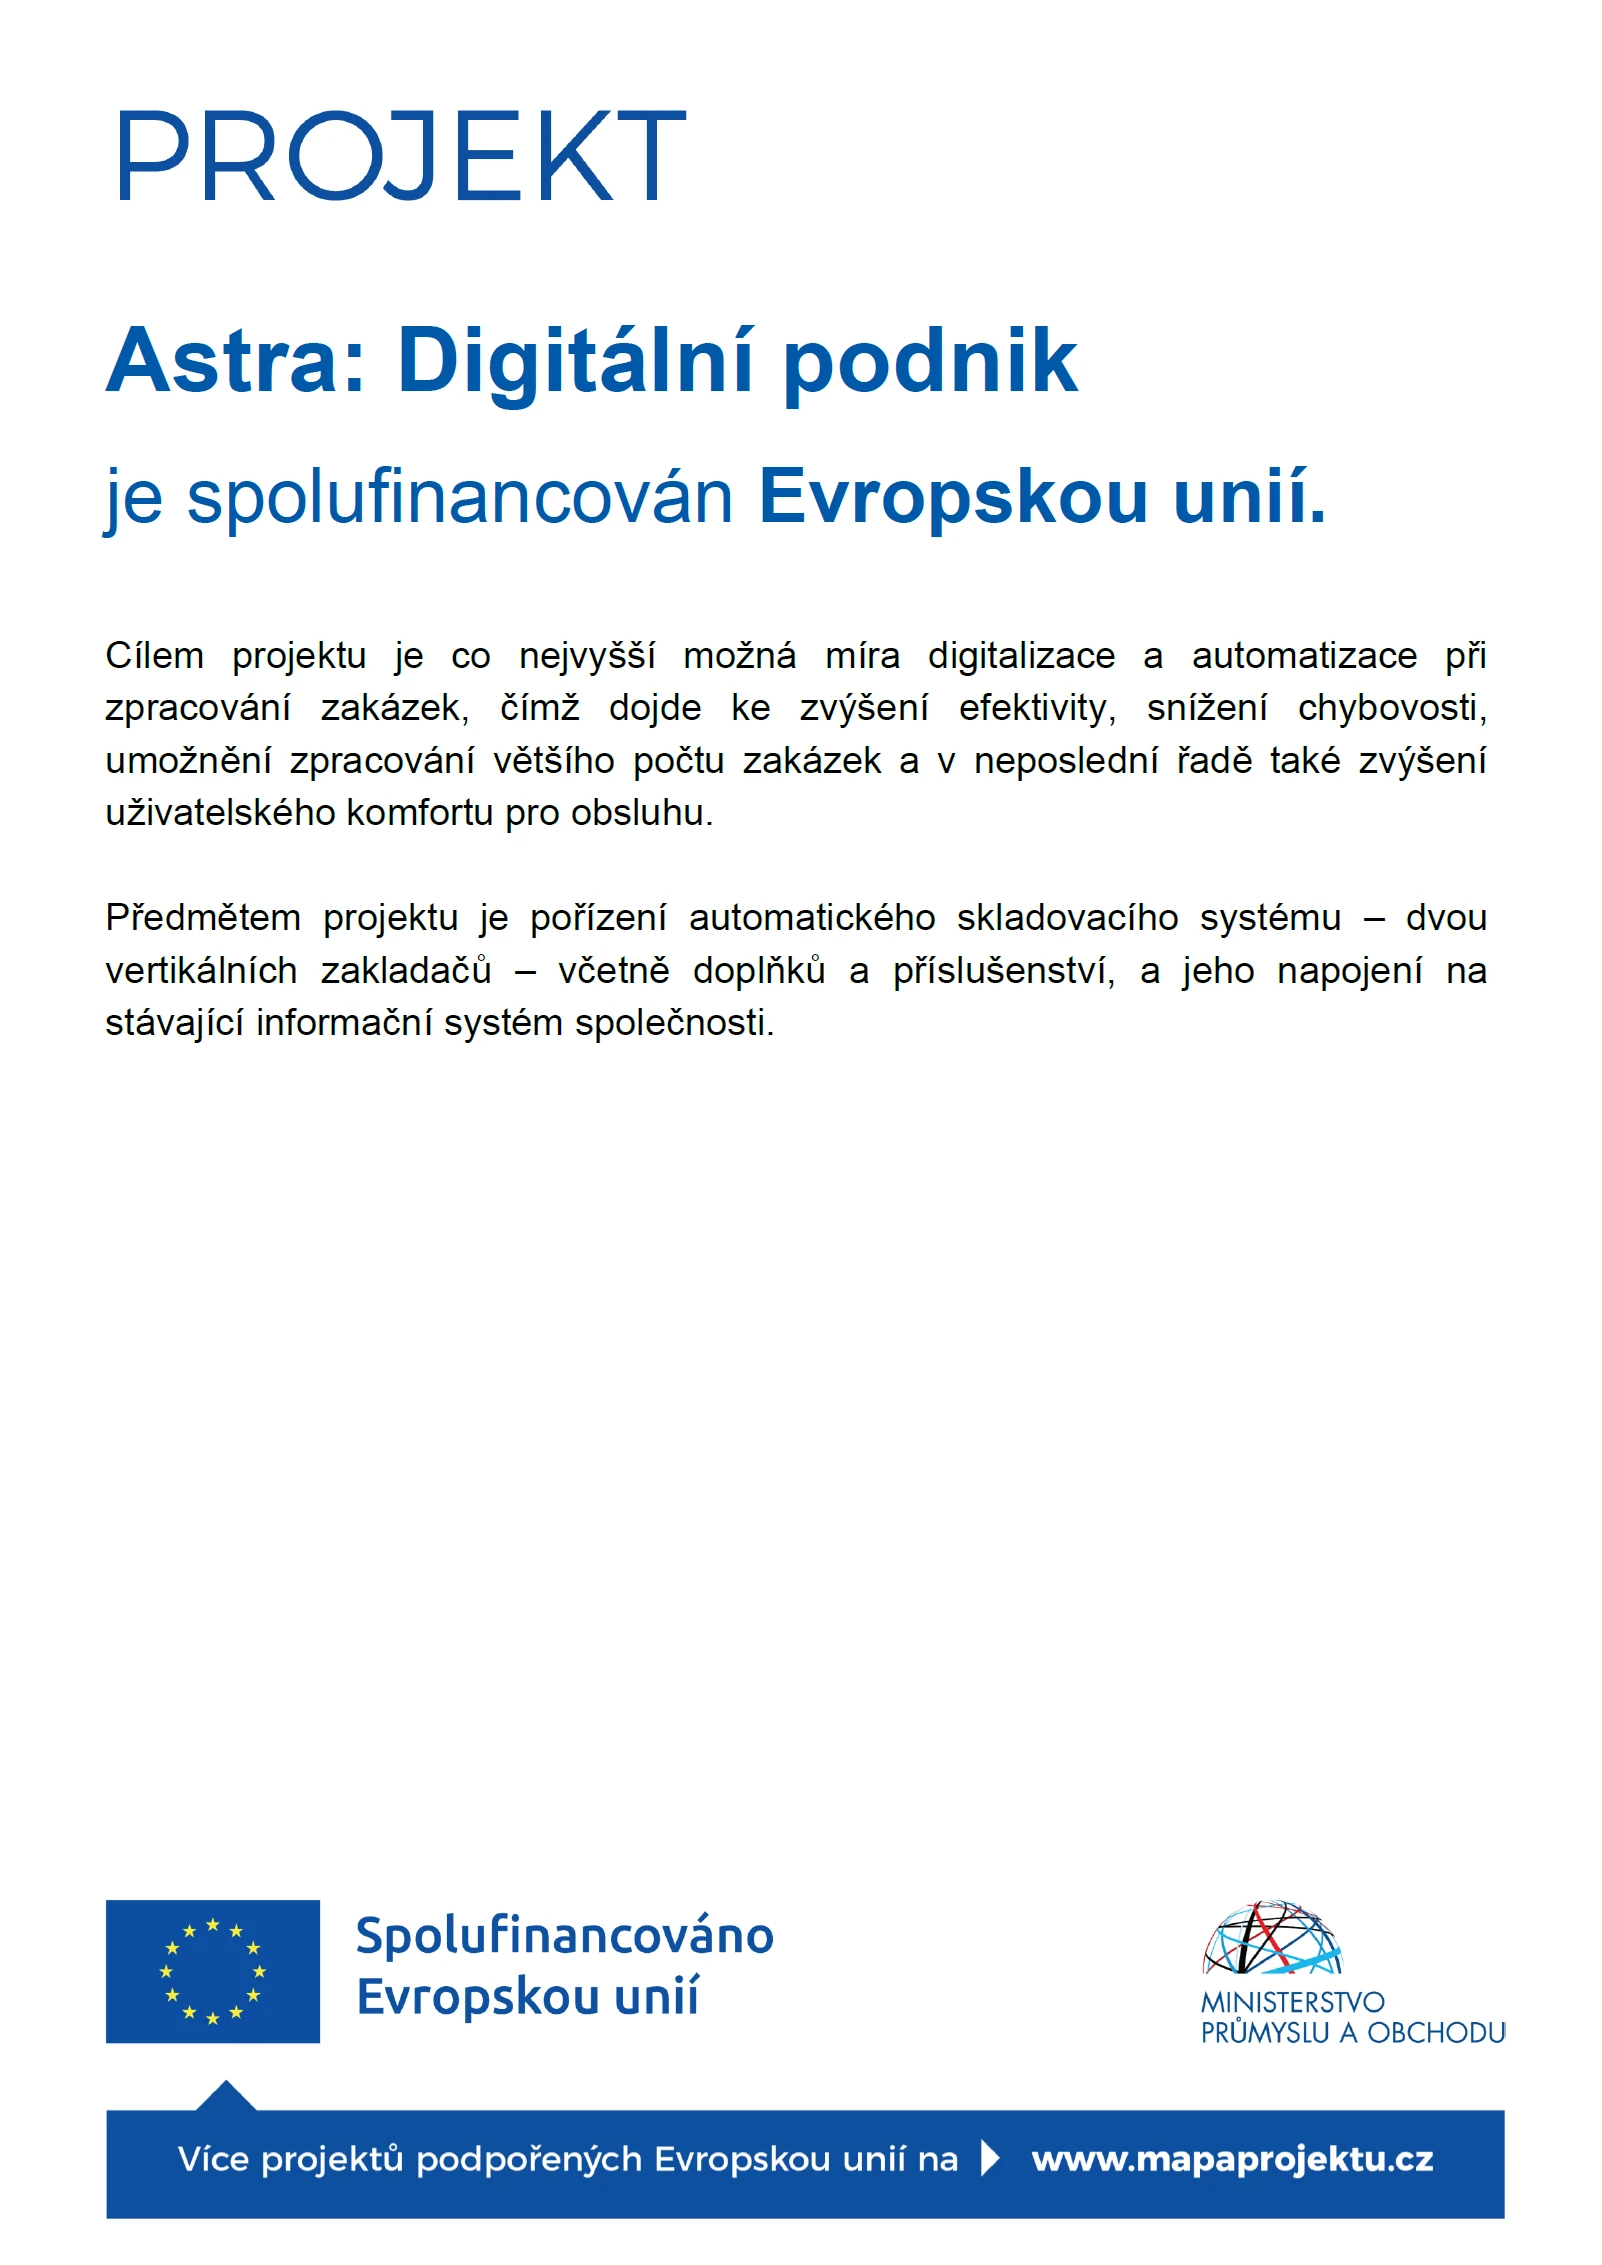 ASTRA Digitální podnik